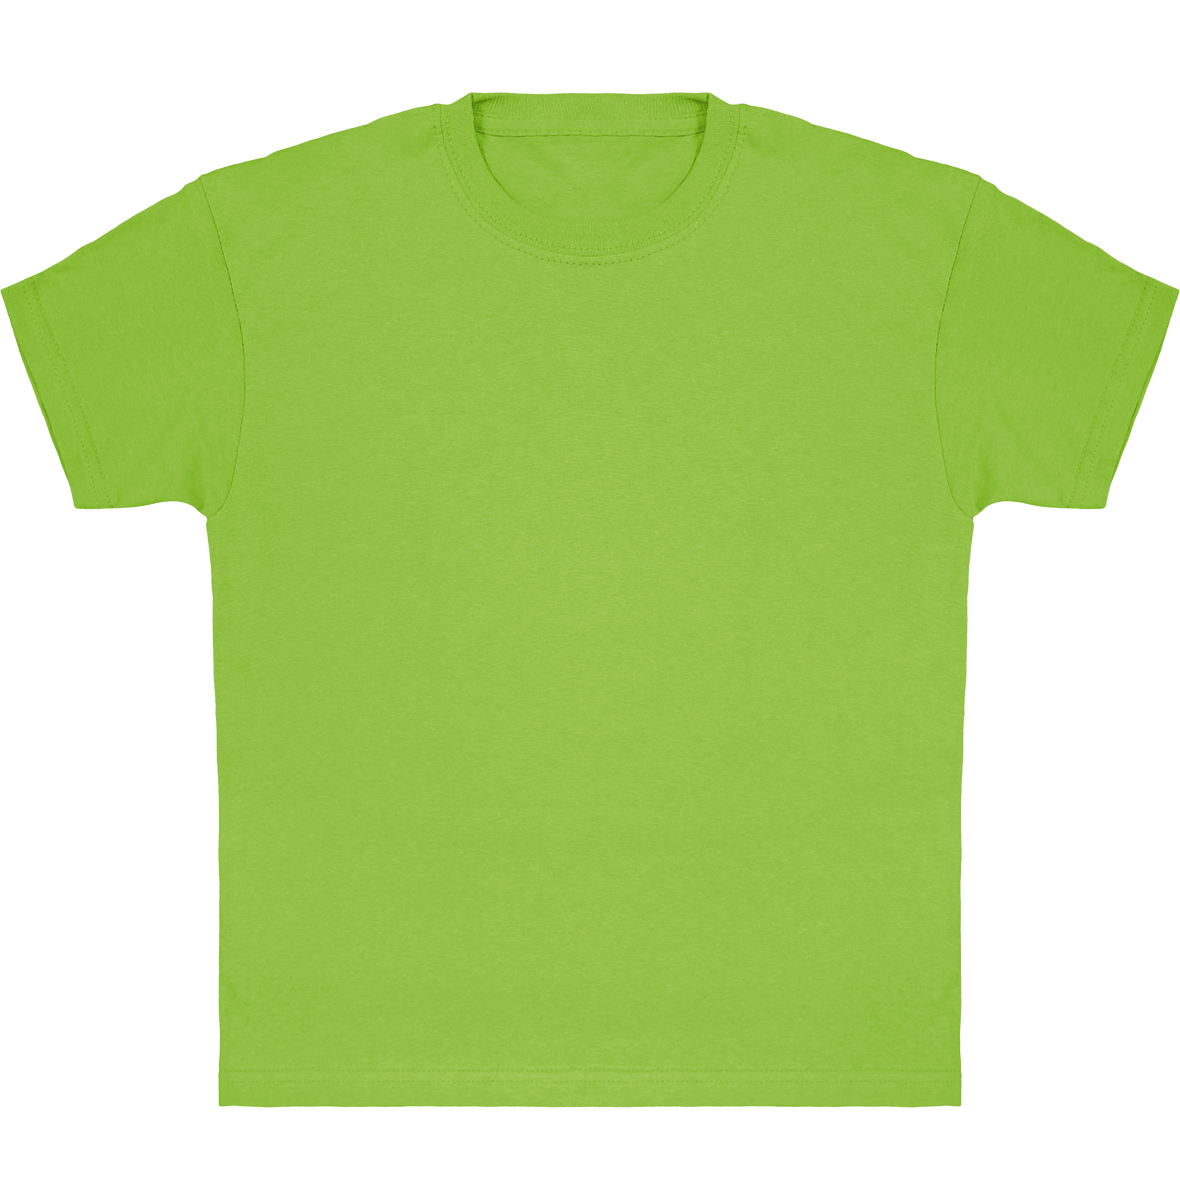 Camiseta Clásica De Niño Personalizada En Algodón 100% Lime